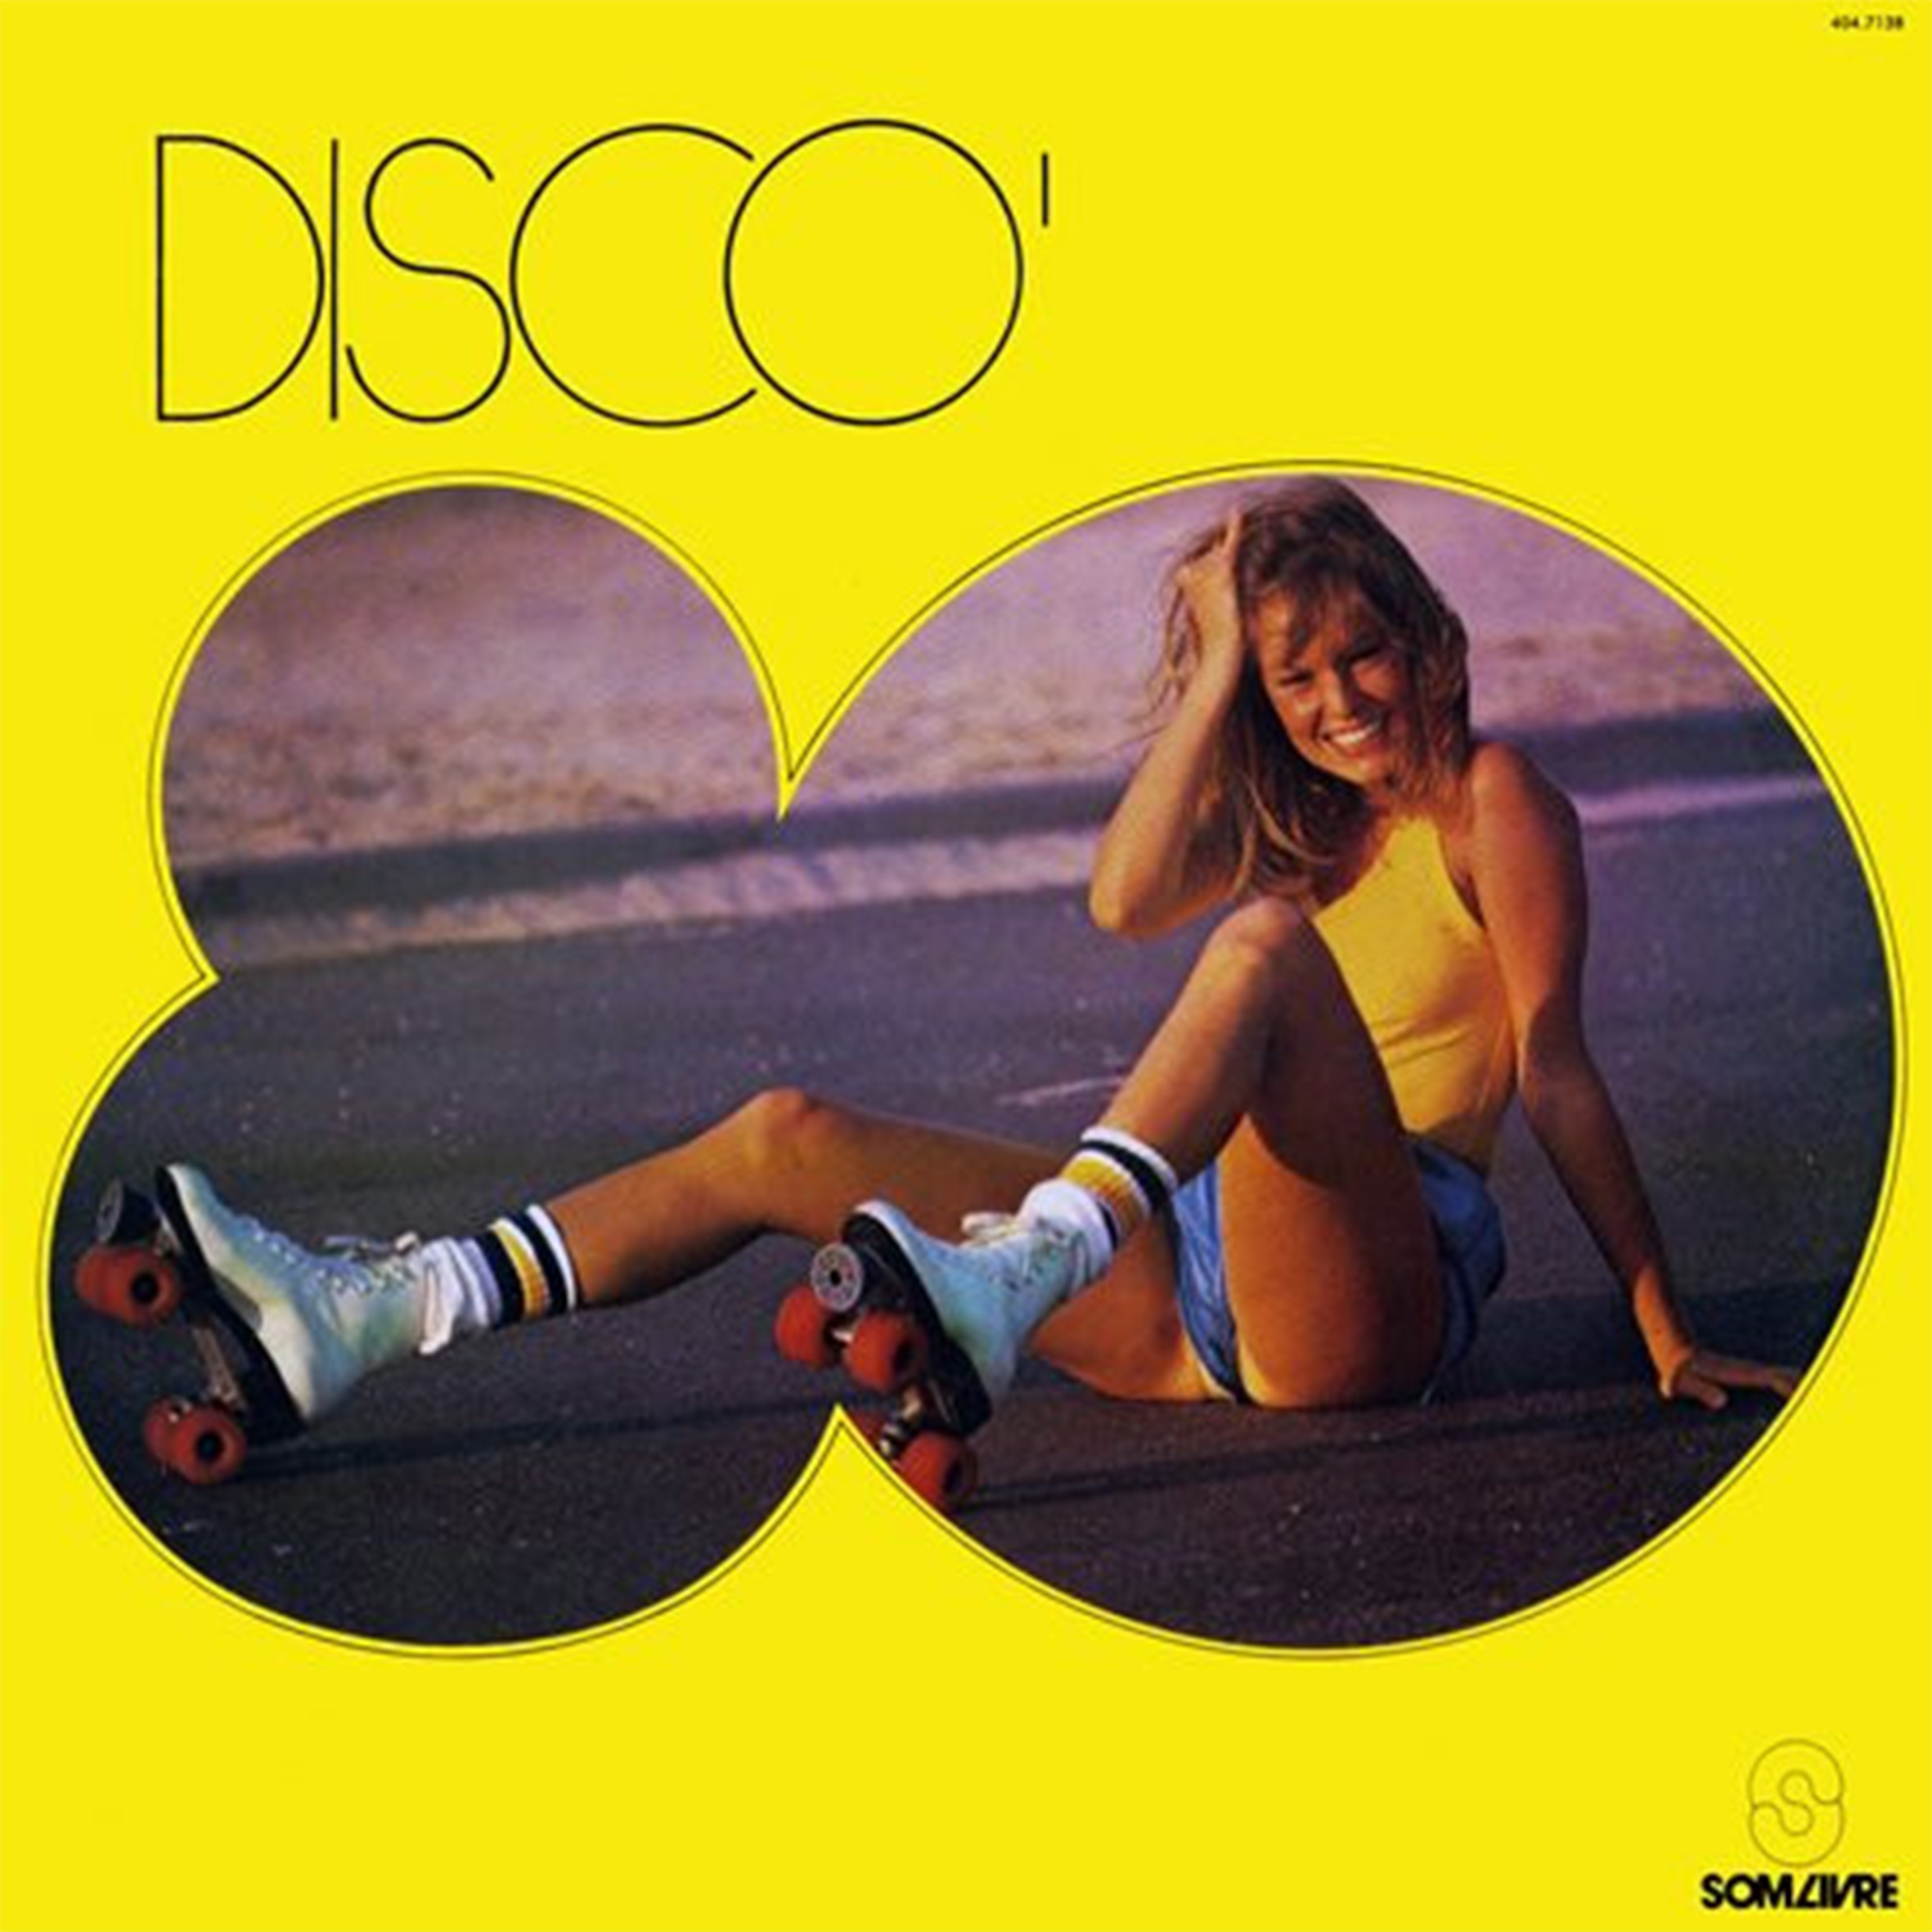 Vinil - Disco 80